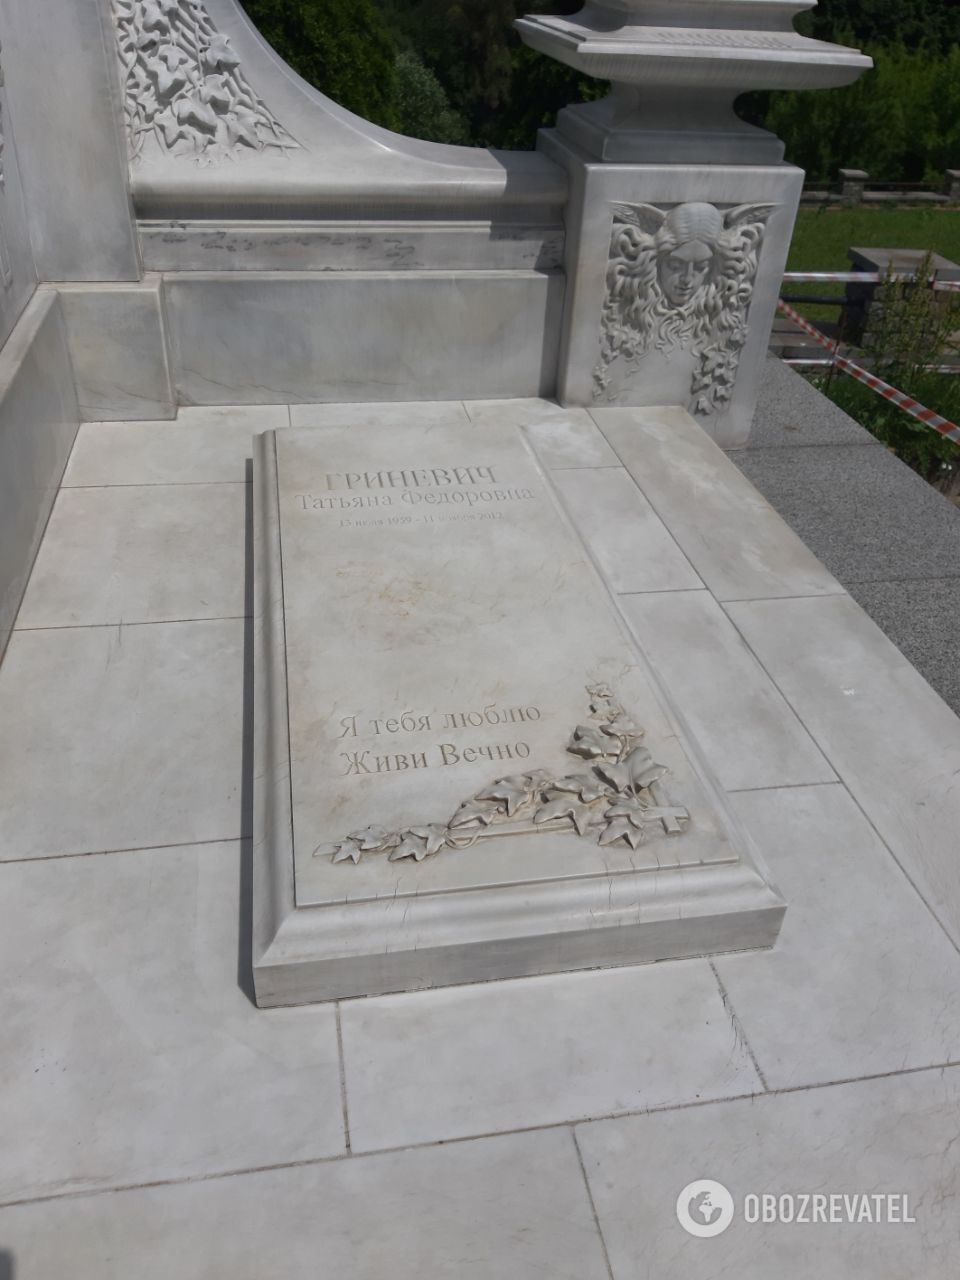 "Живи вічно", – написано на надгробку